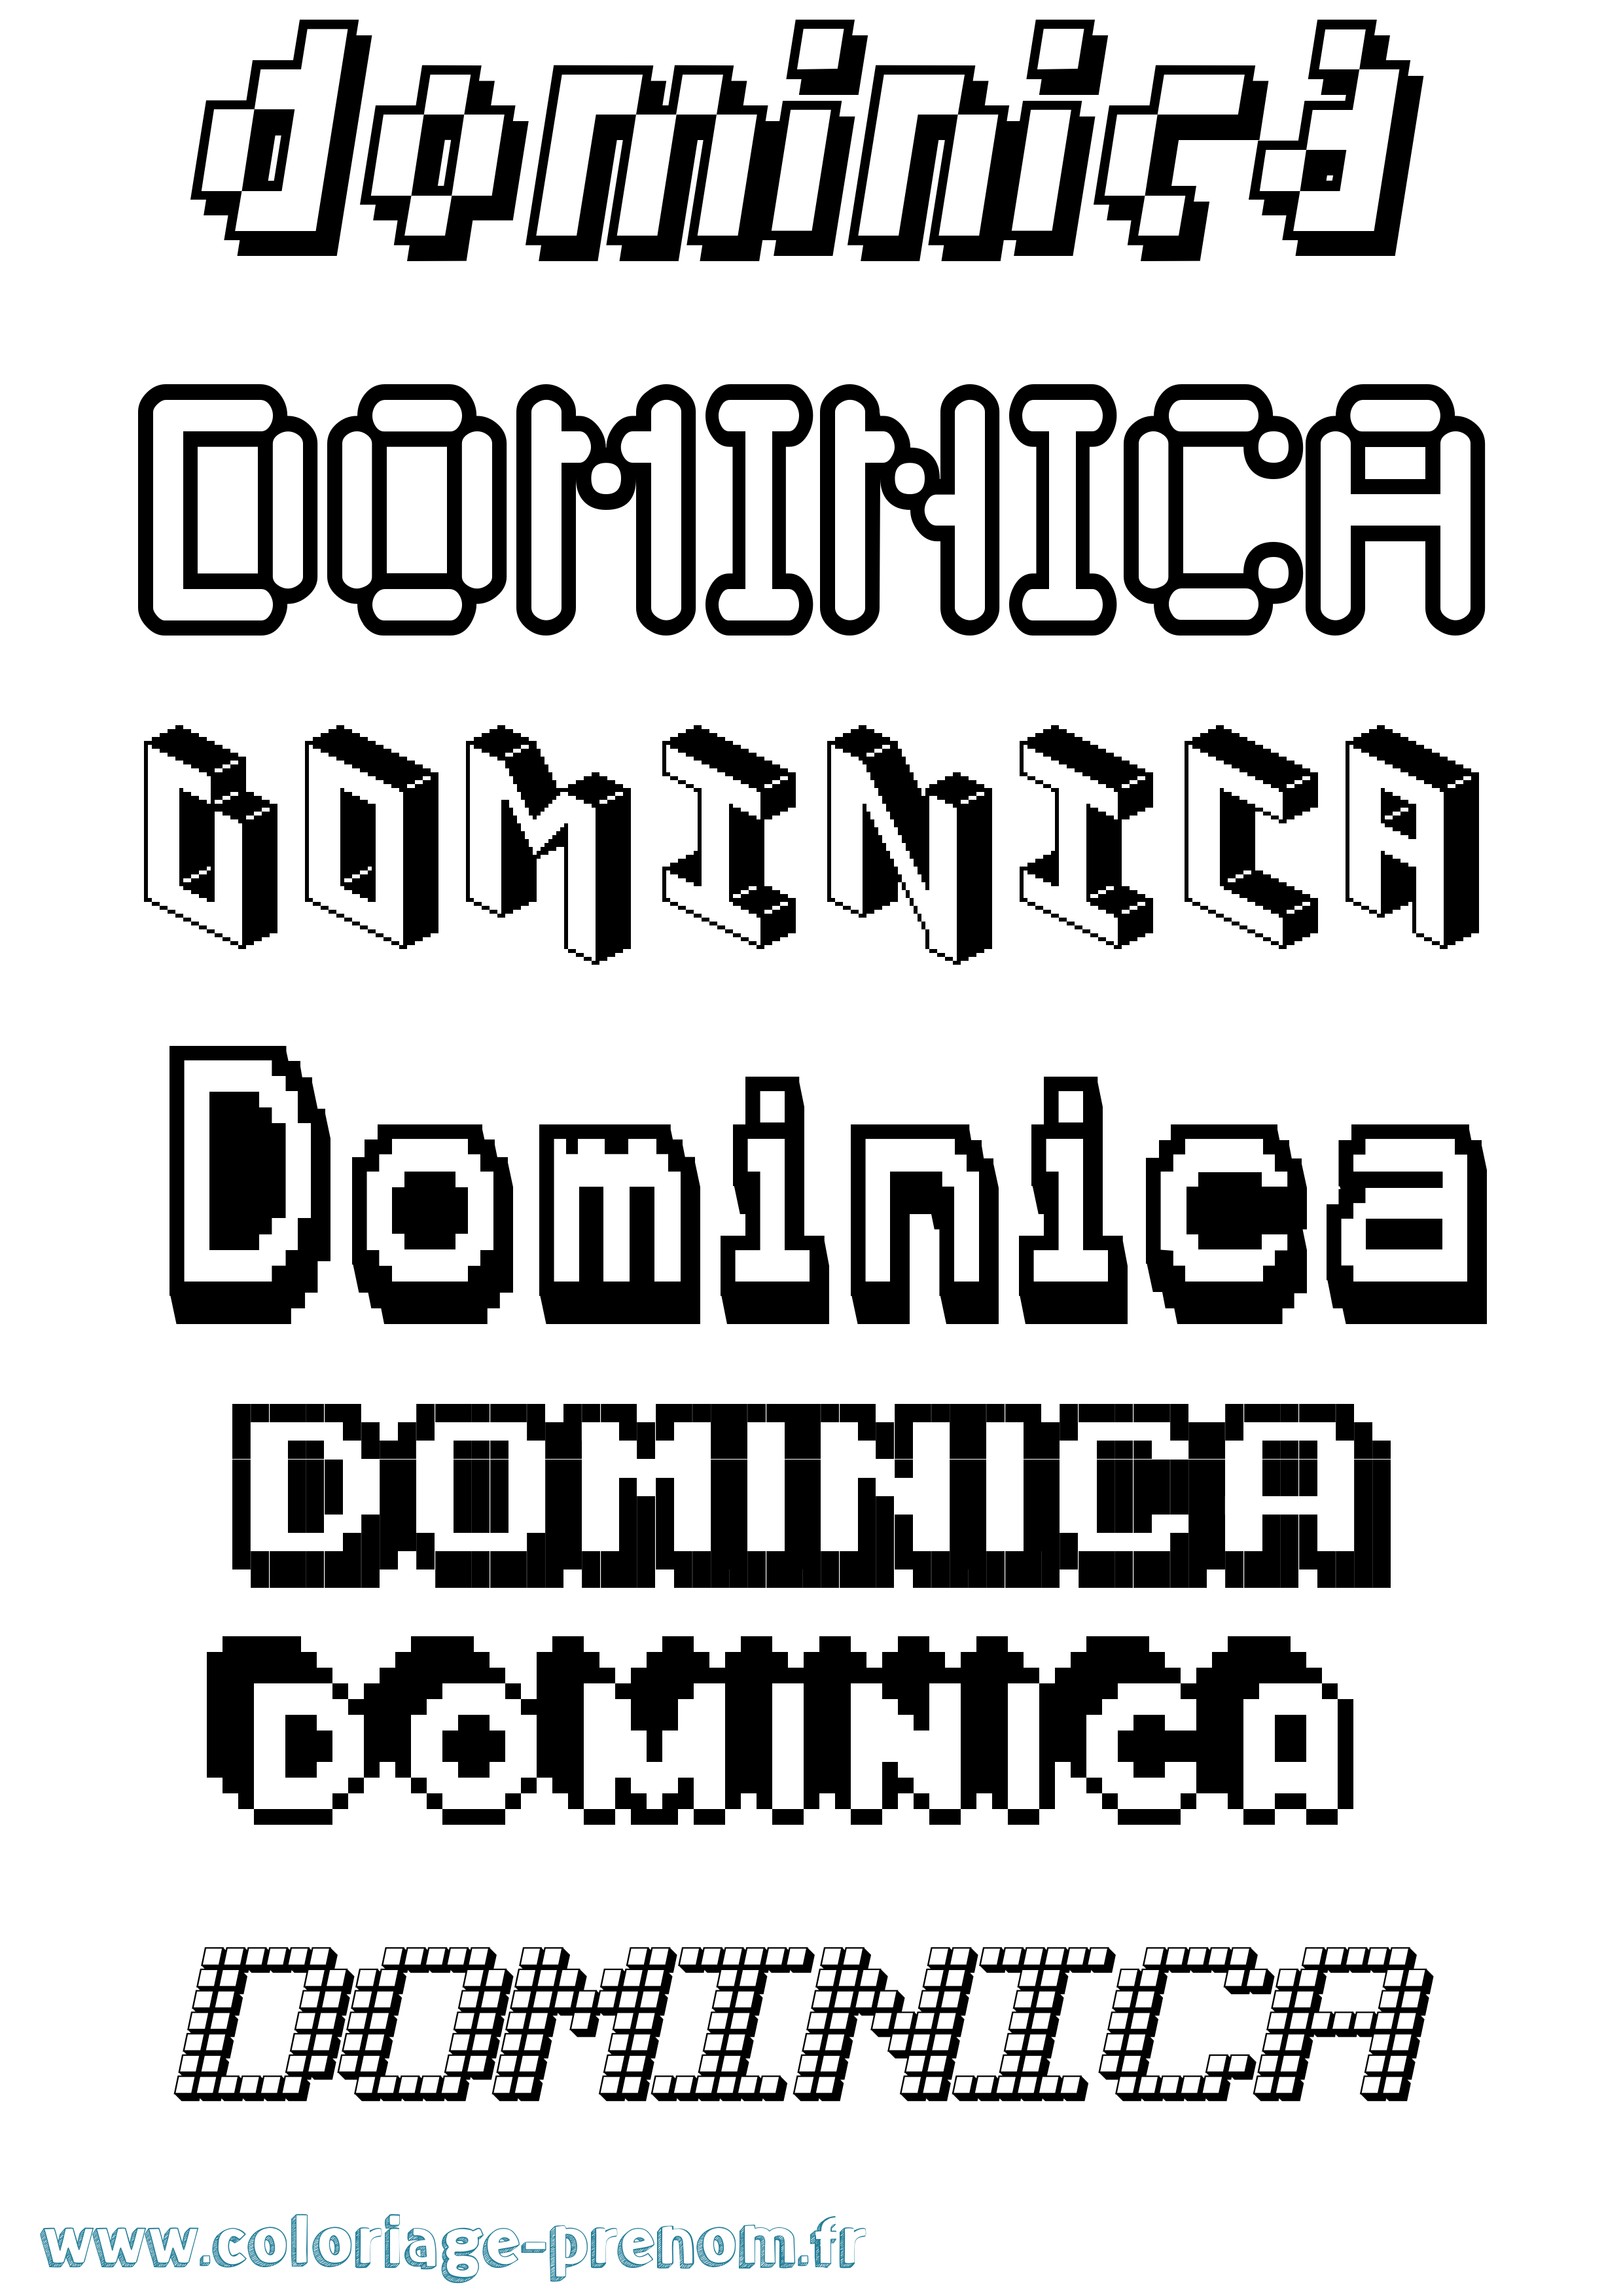 Coloriage prénom Dominica Pixel